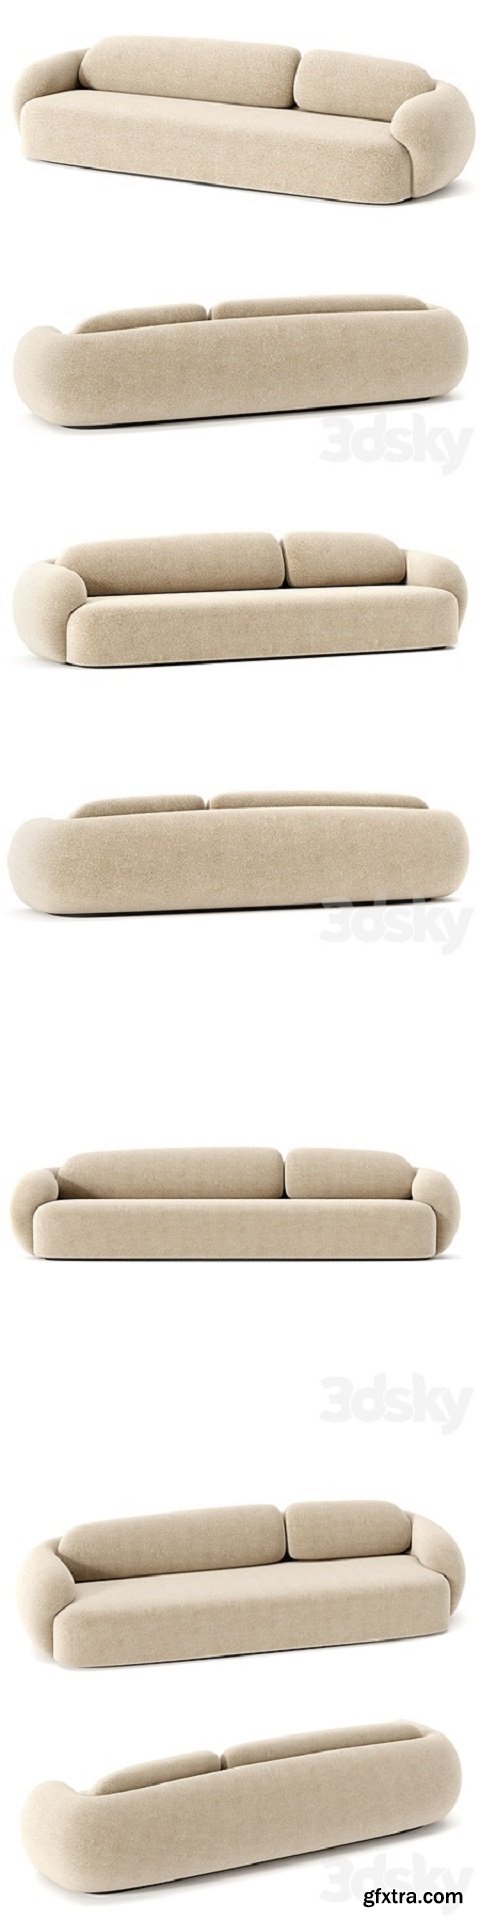 Paolo castelli coral sofa